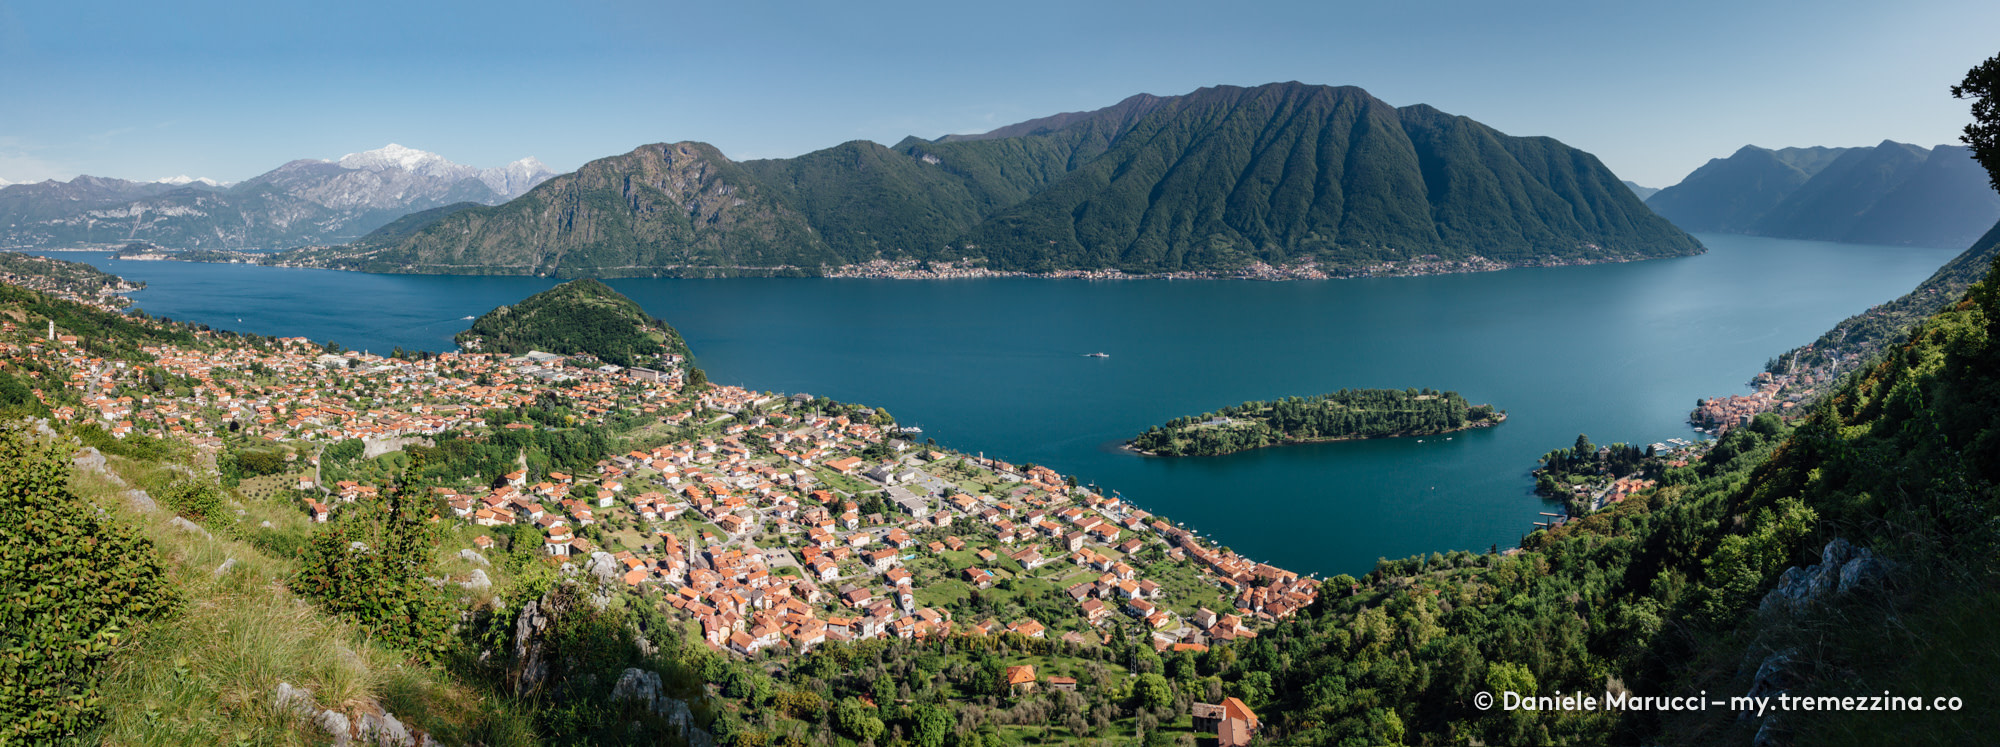 Isola Comacina, Tremezzina, Tremezzo, Ossuccio, Lenno, Mezzegra - Lake Como, Lago di Como